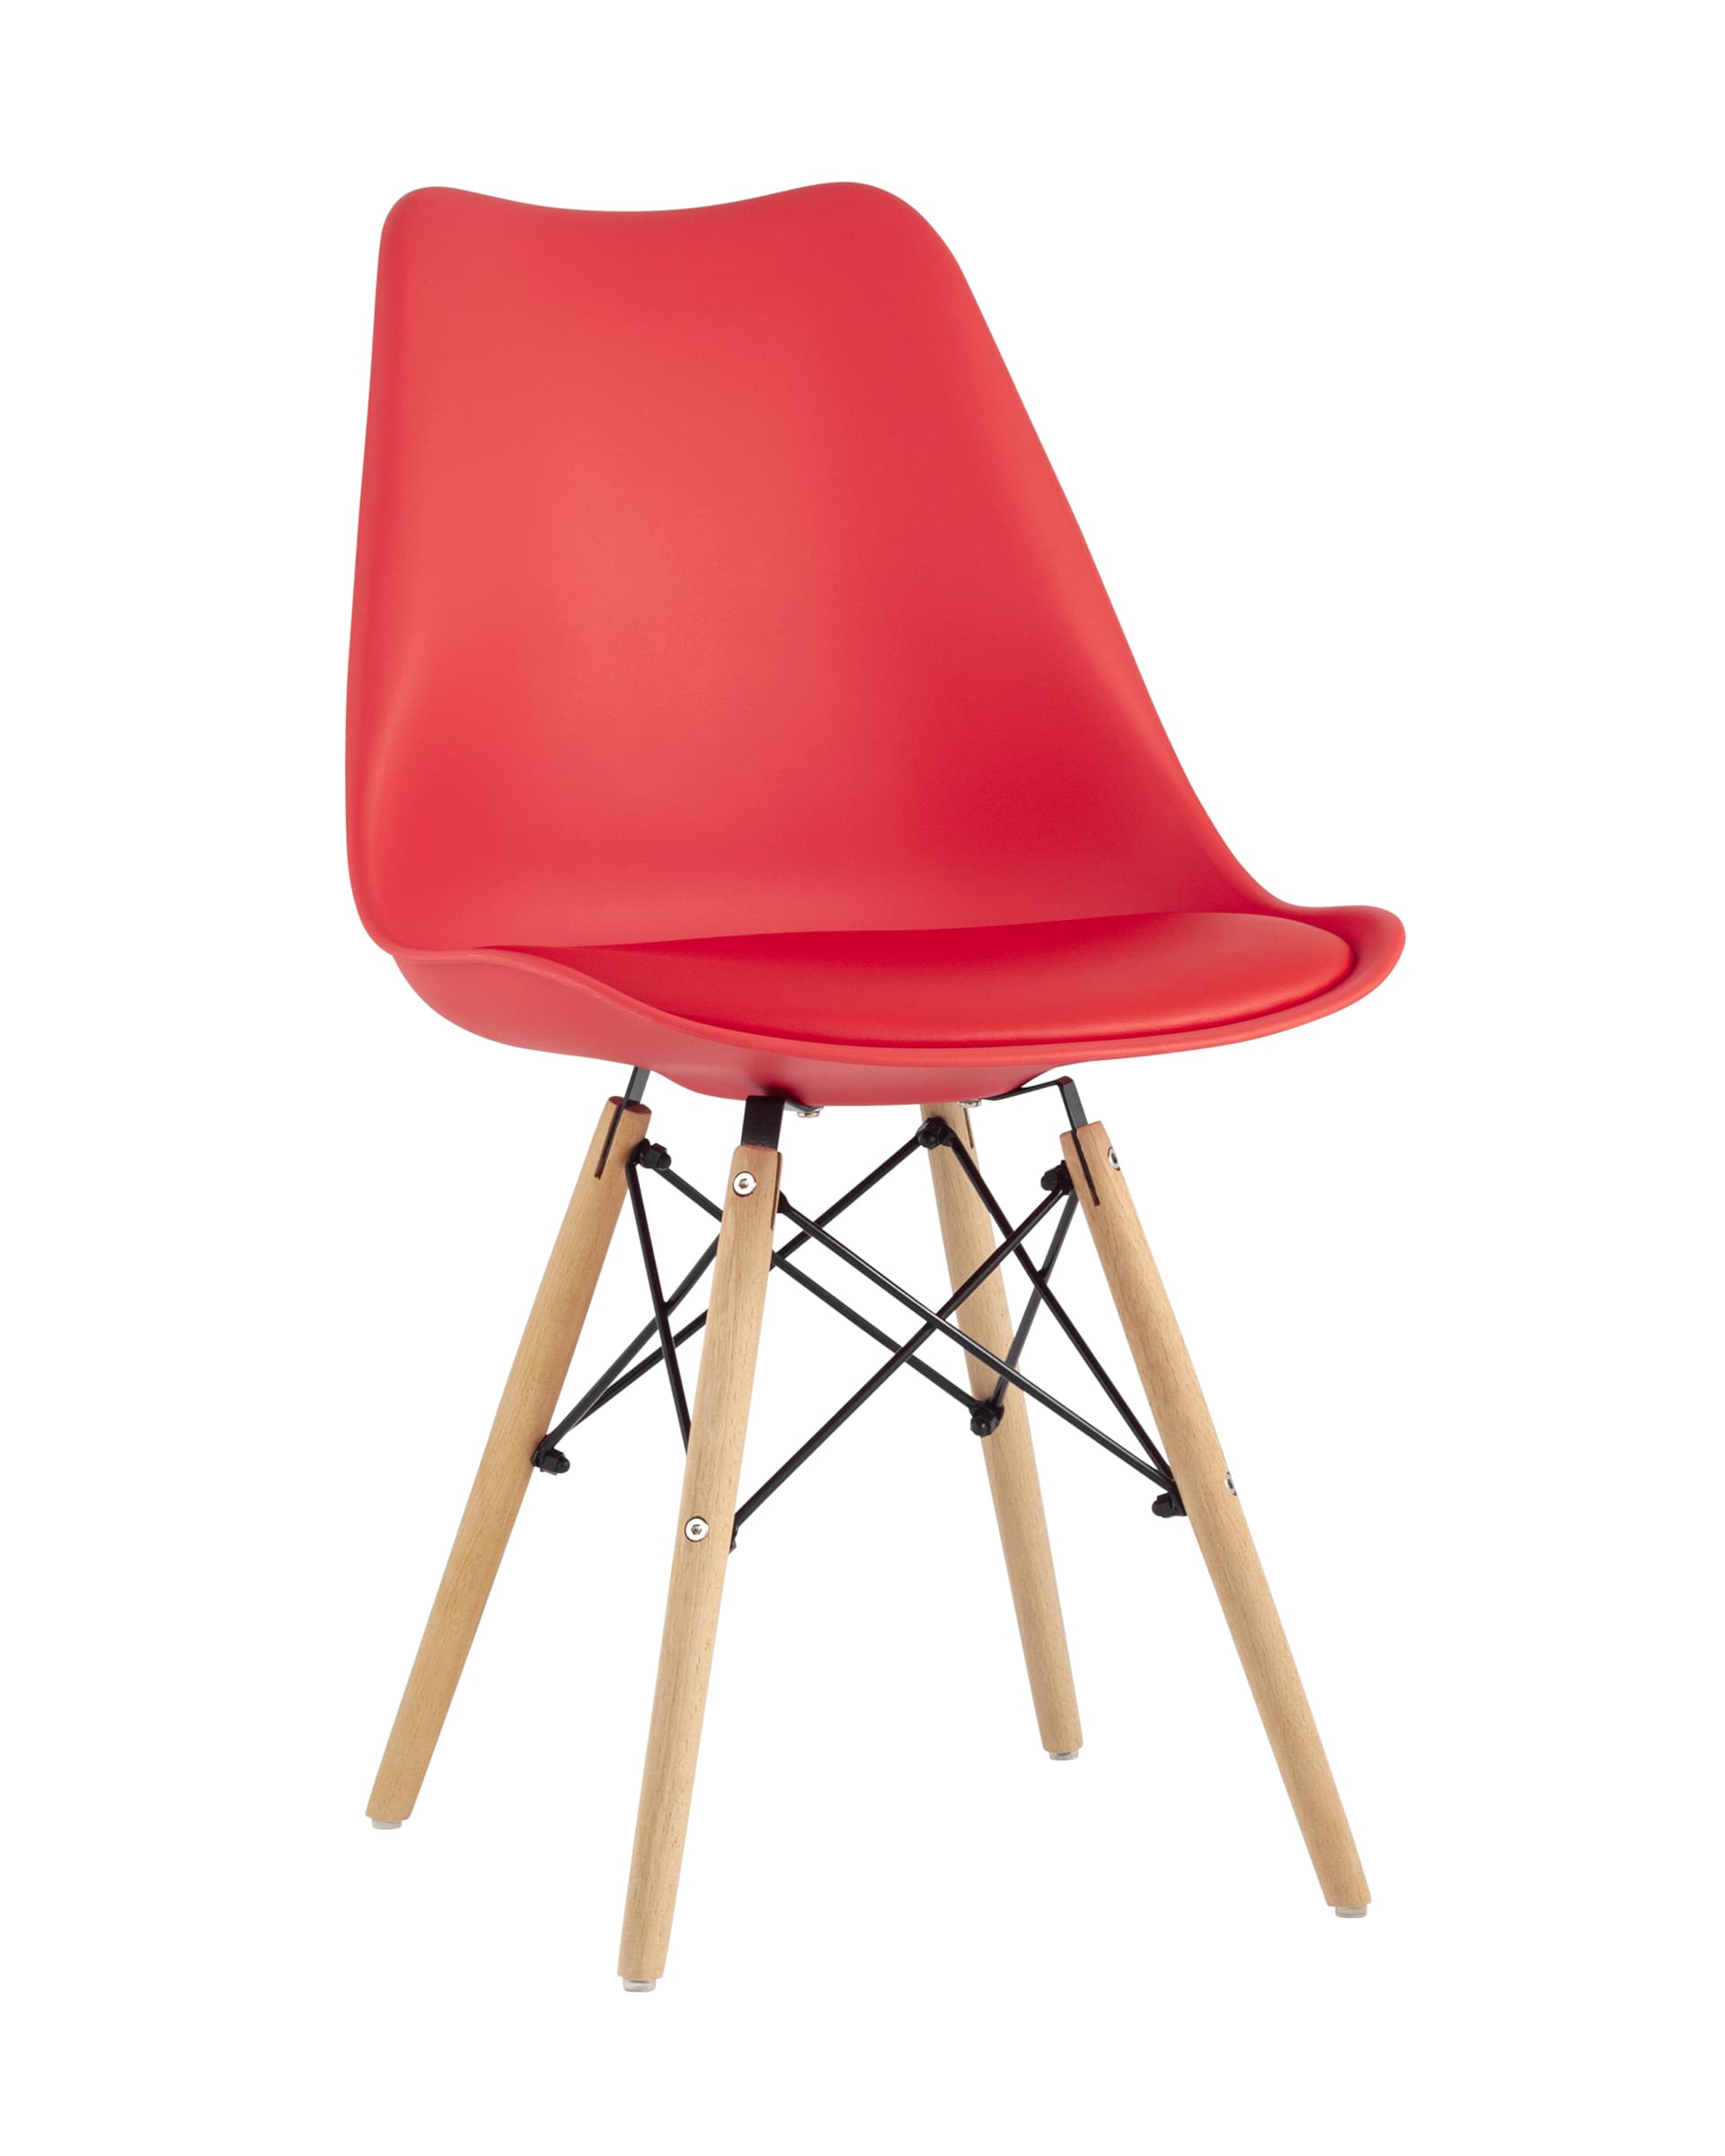 Стул Eames Soft красный обеденный сиденье экокожа ножки из массива бука